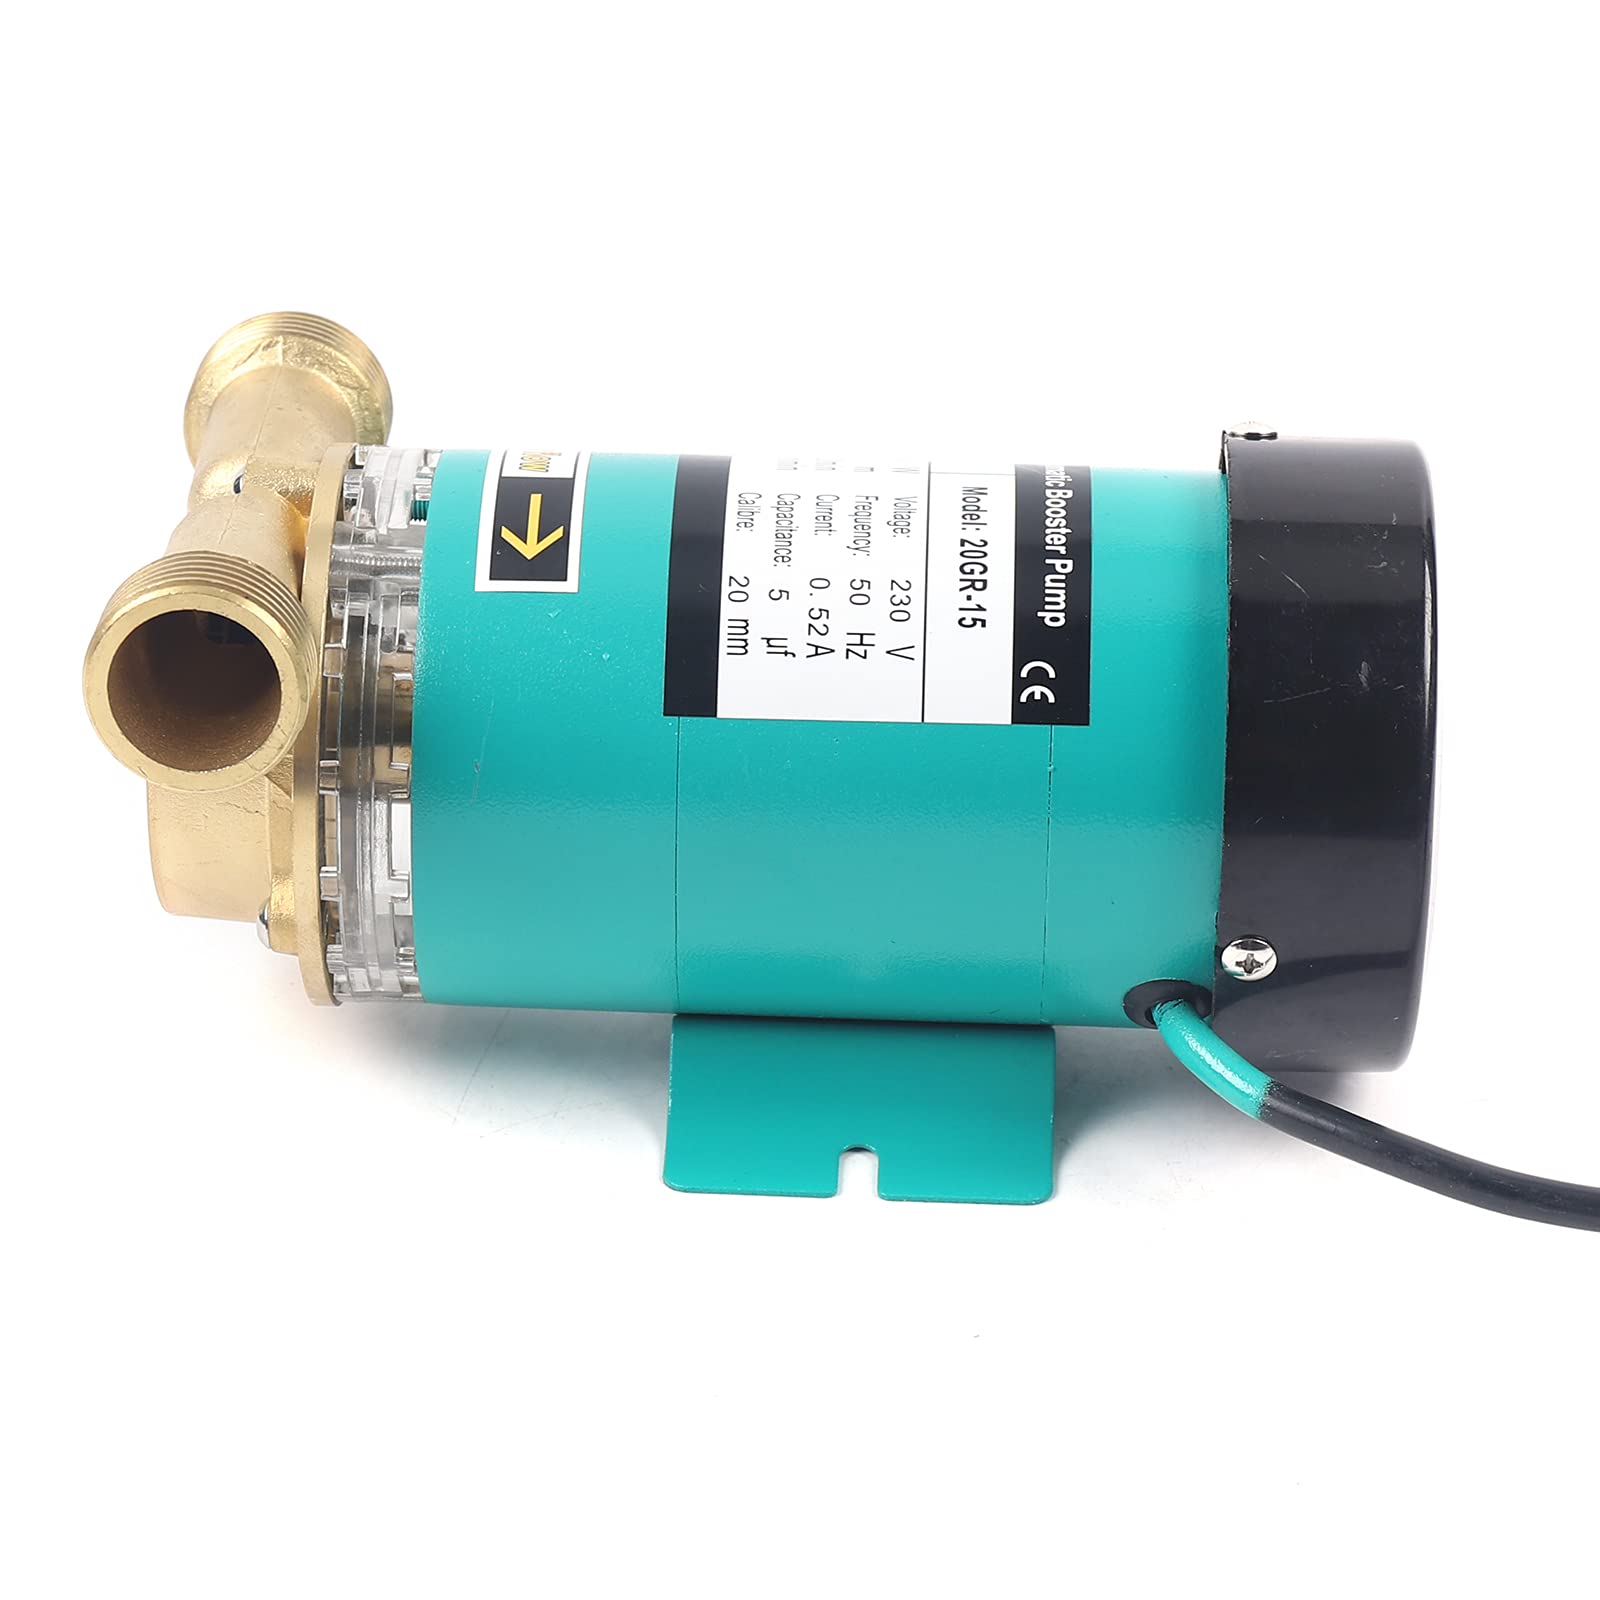 Pompa di circolazione pompa per piscina pompa filtro pompa a pressione 120W 20GR-15 pompa booster